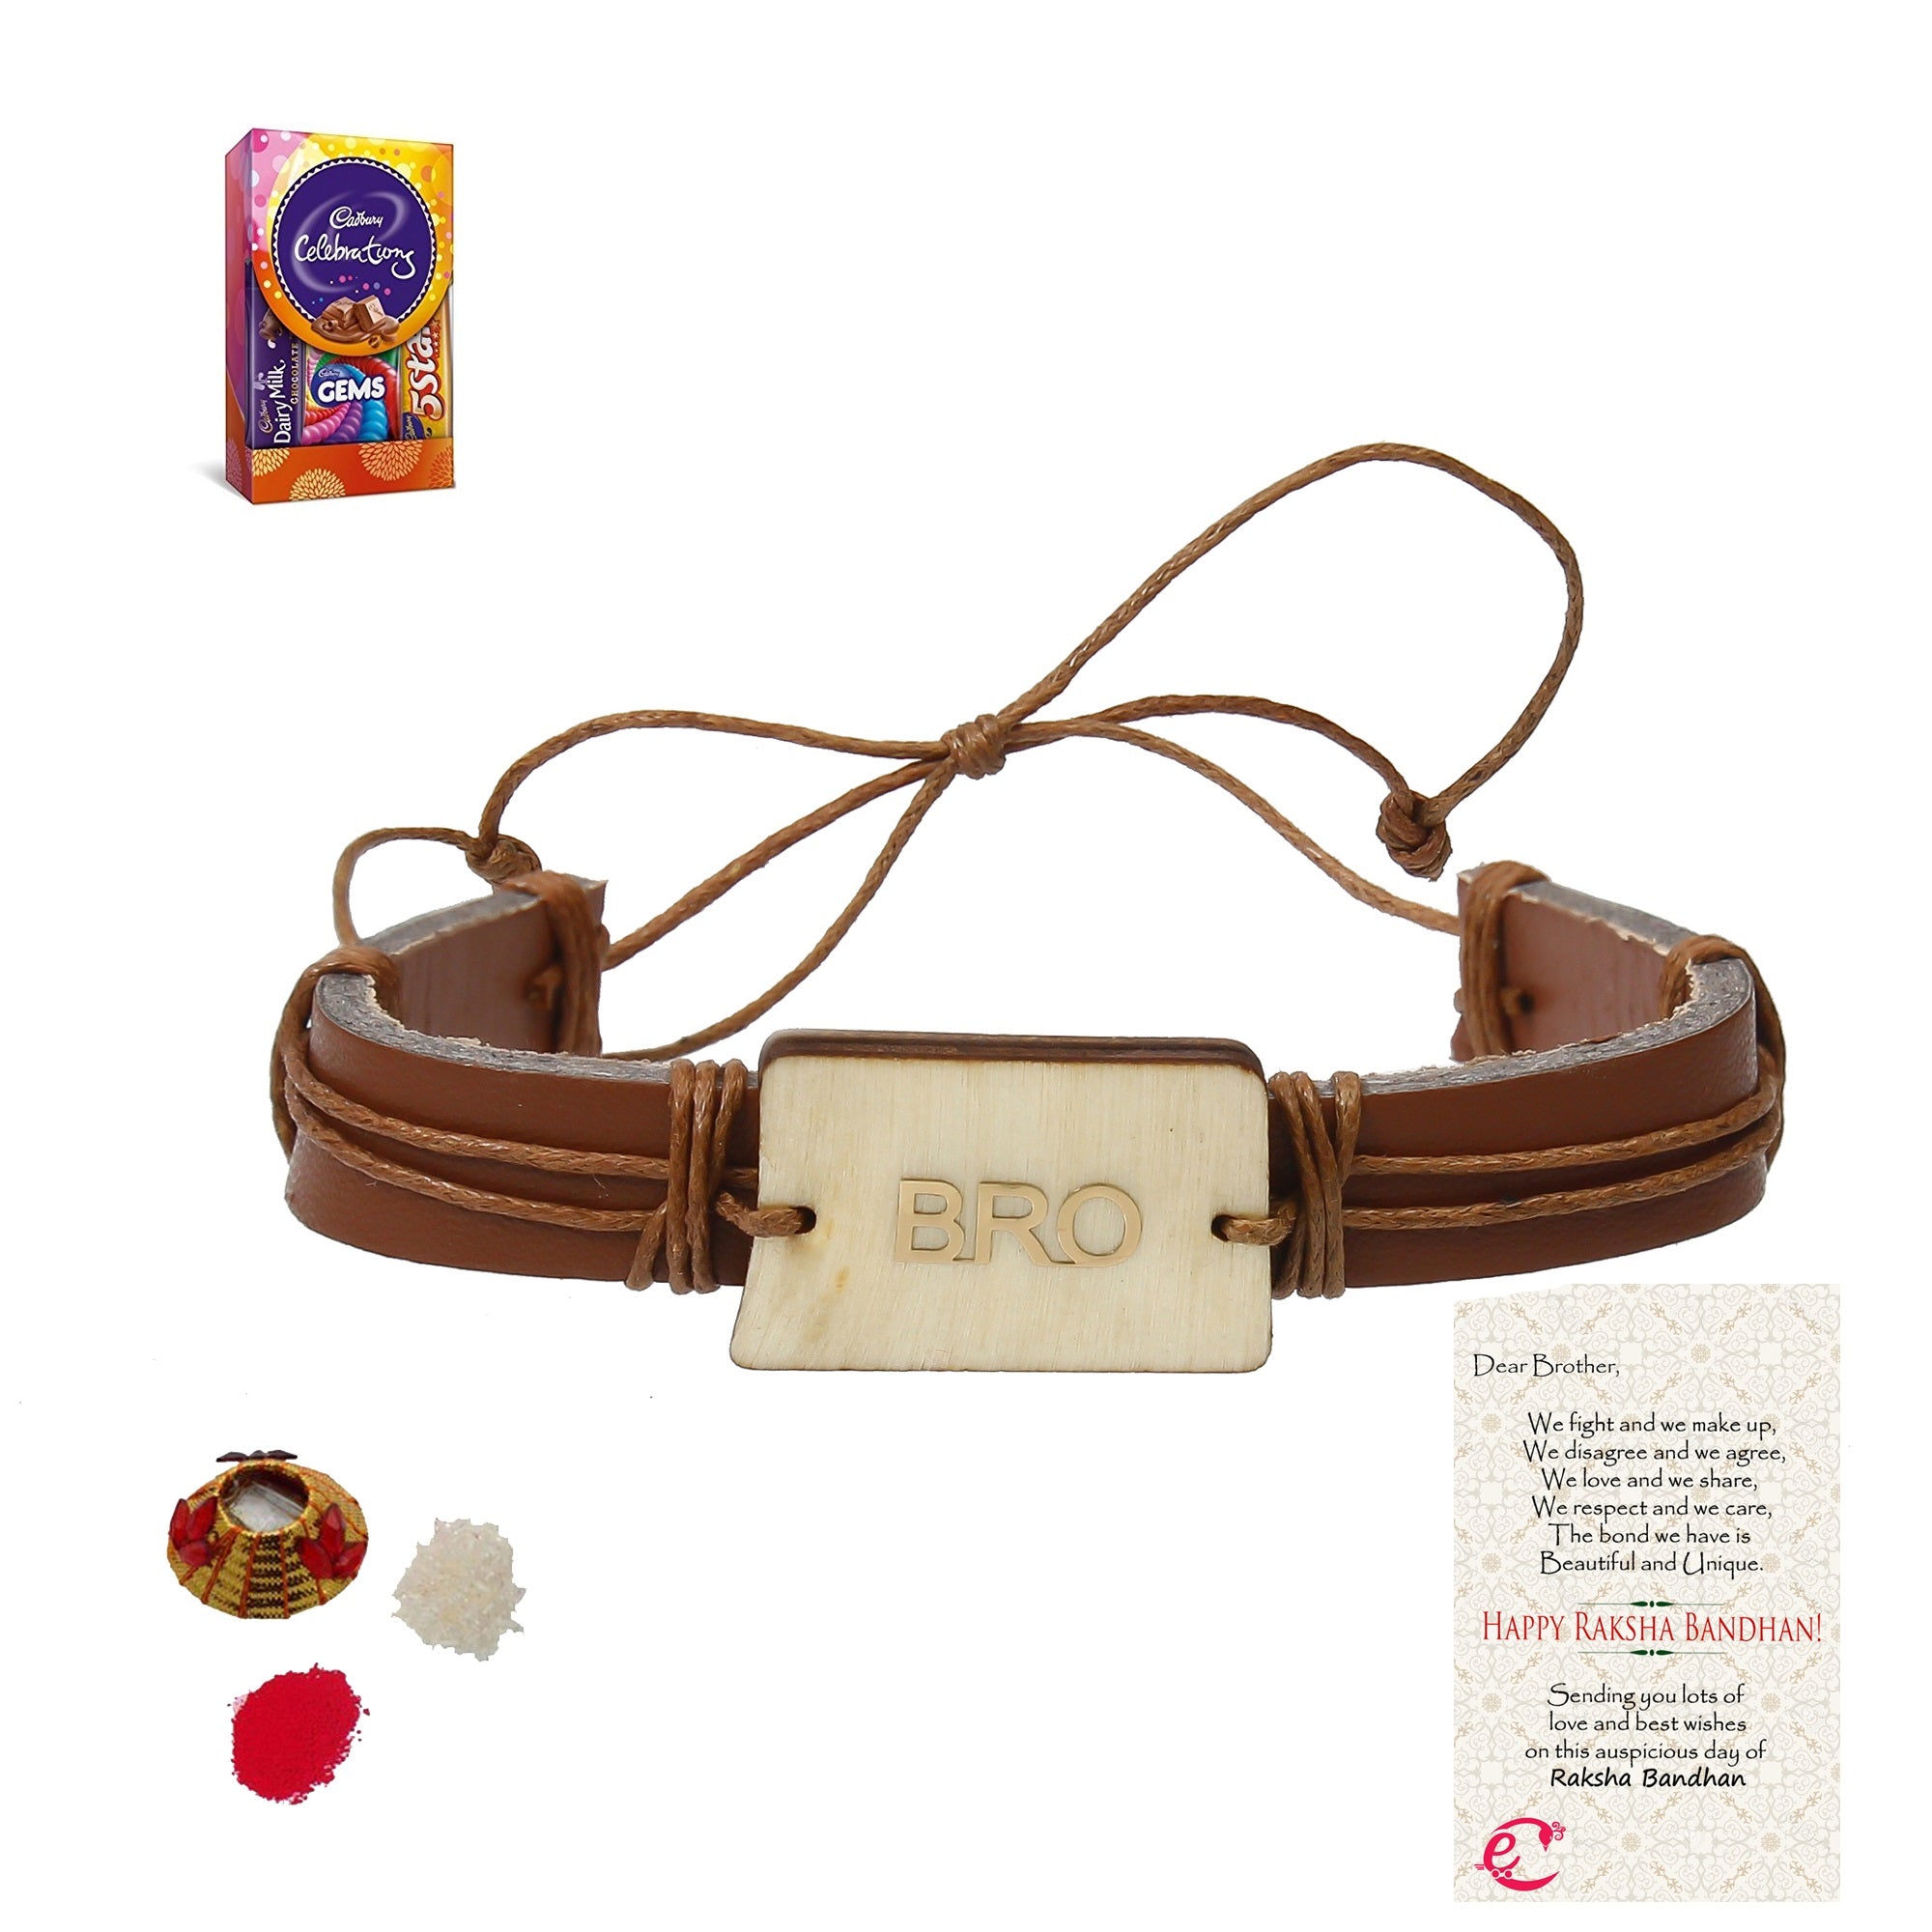 Designer Leather Bracelet BRO Rakhi with Cadbury Celebrations Gift Pack of 5 Assorted Chocolates and Roli Tikka Matki, Best Wishes Greeting Card